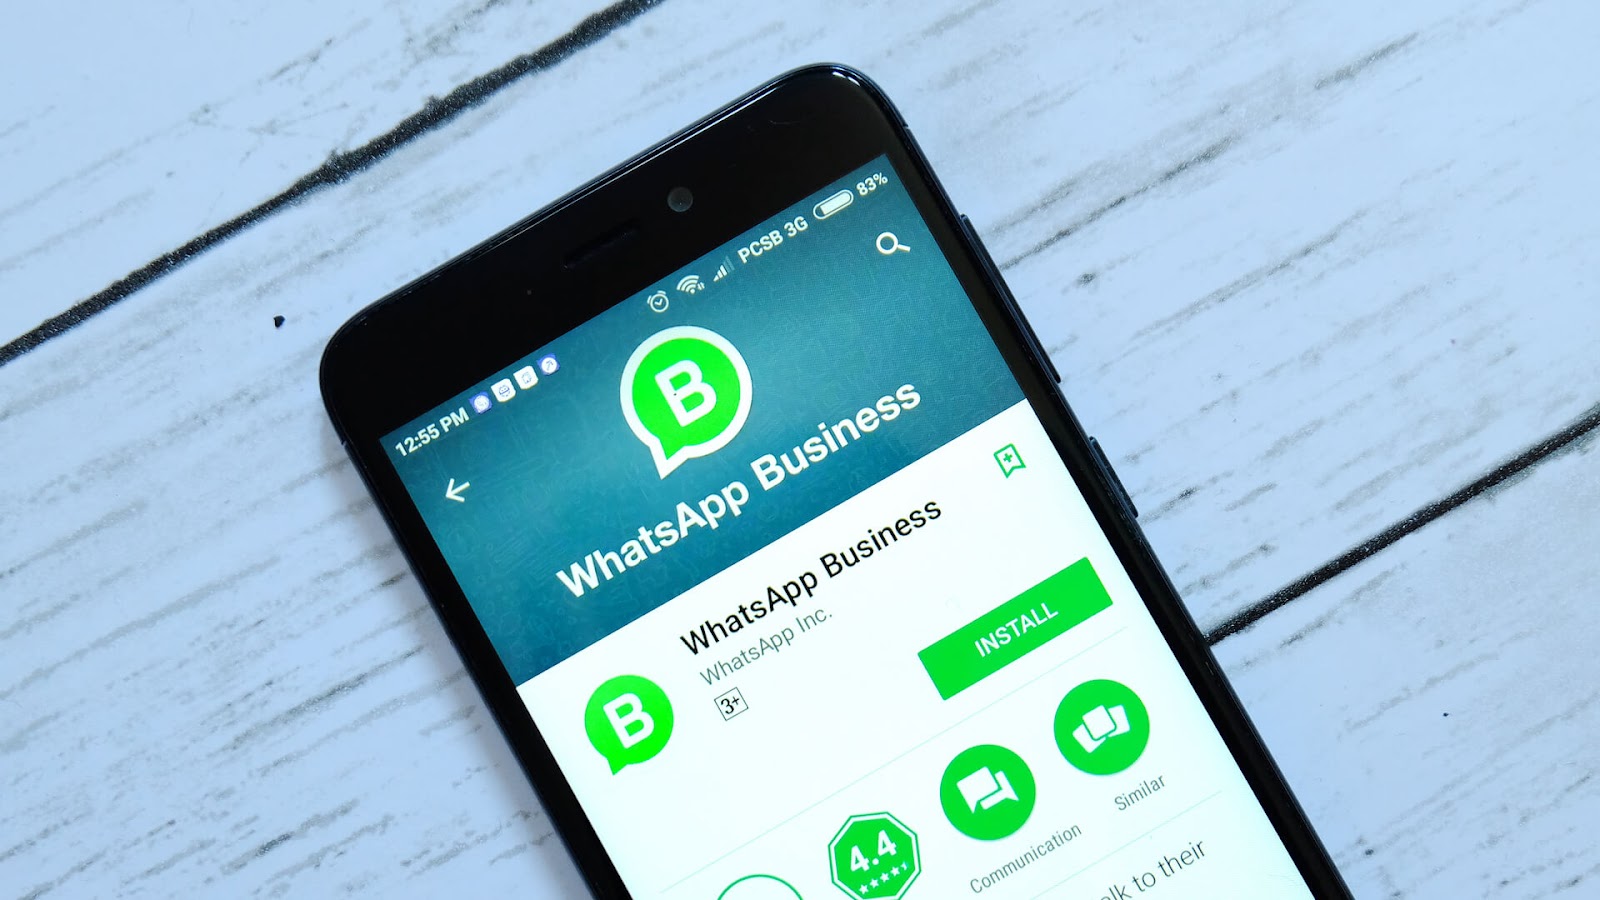 whatsapp business desktop